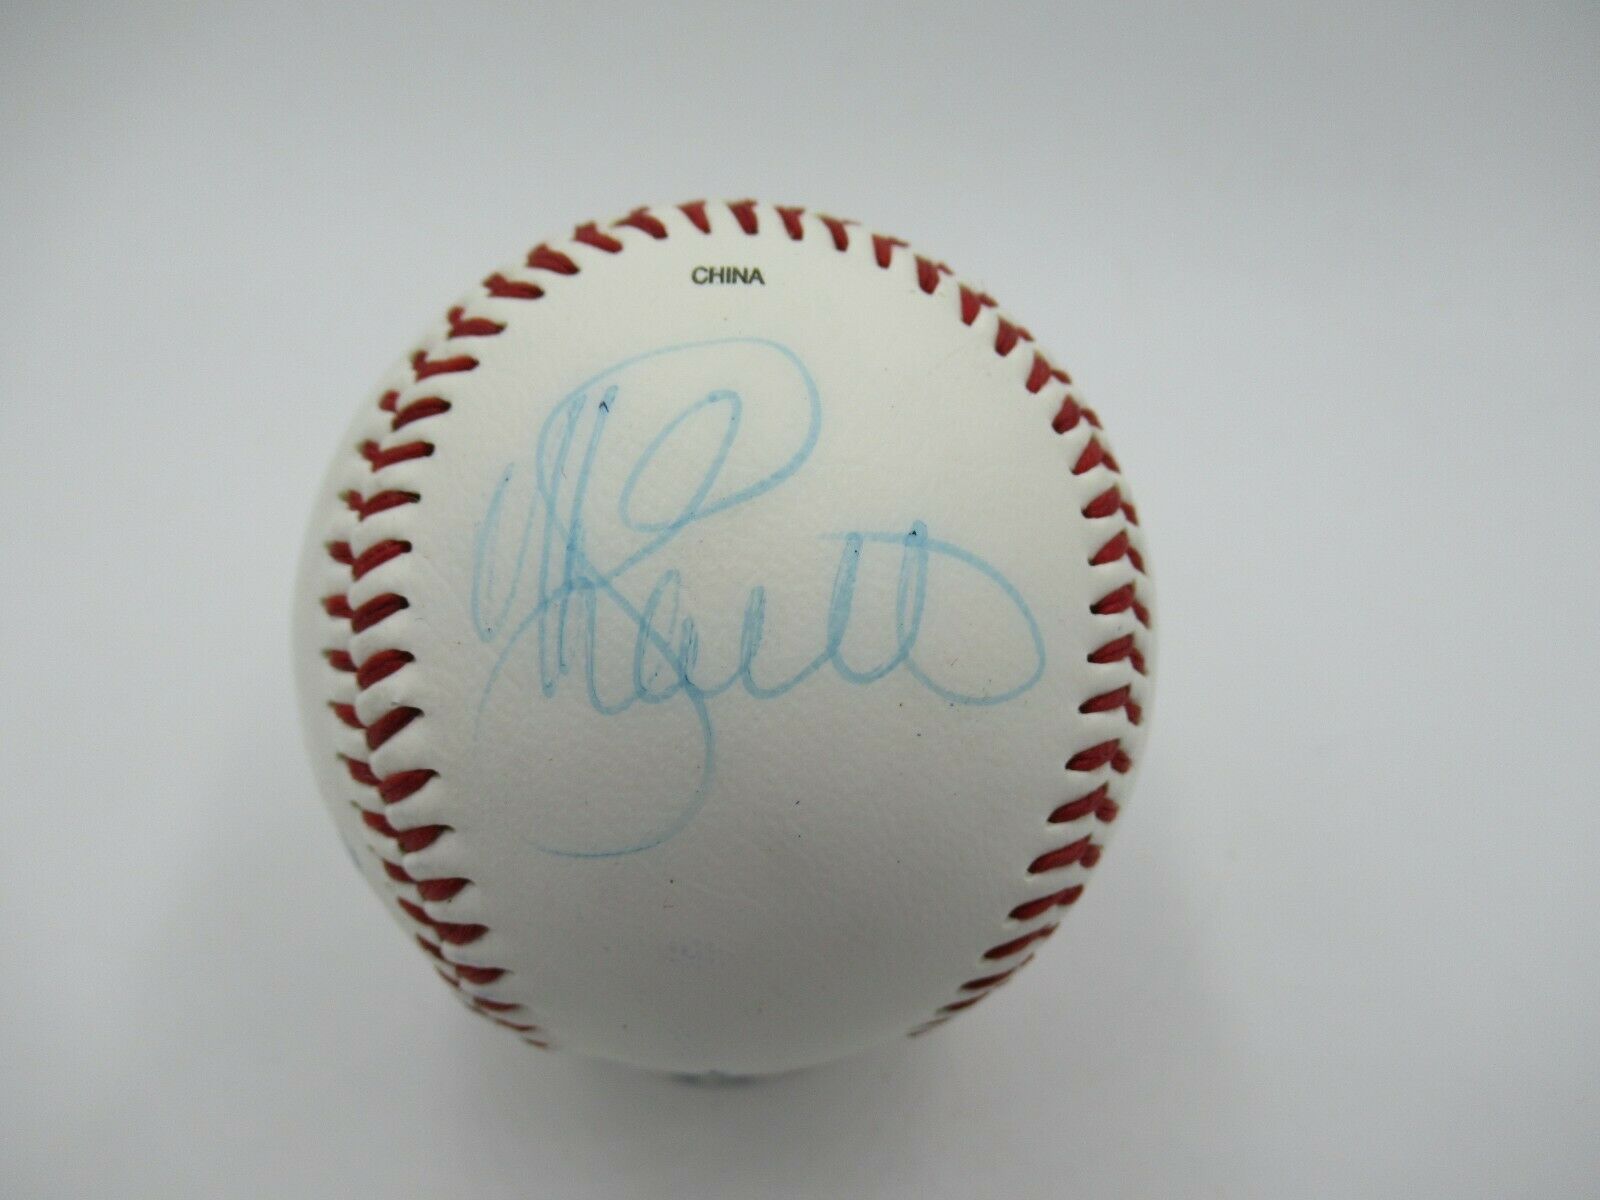 Mike Schmidt Signed Autographed Major League Baseball JSA COA